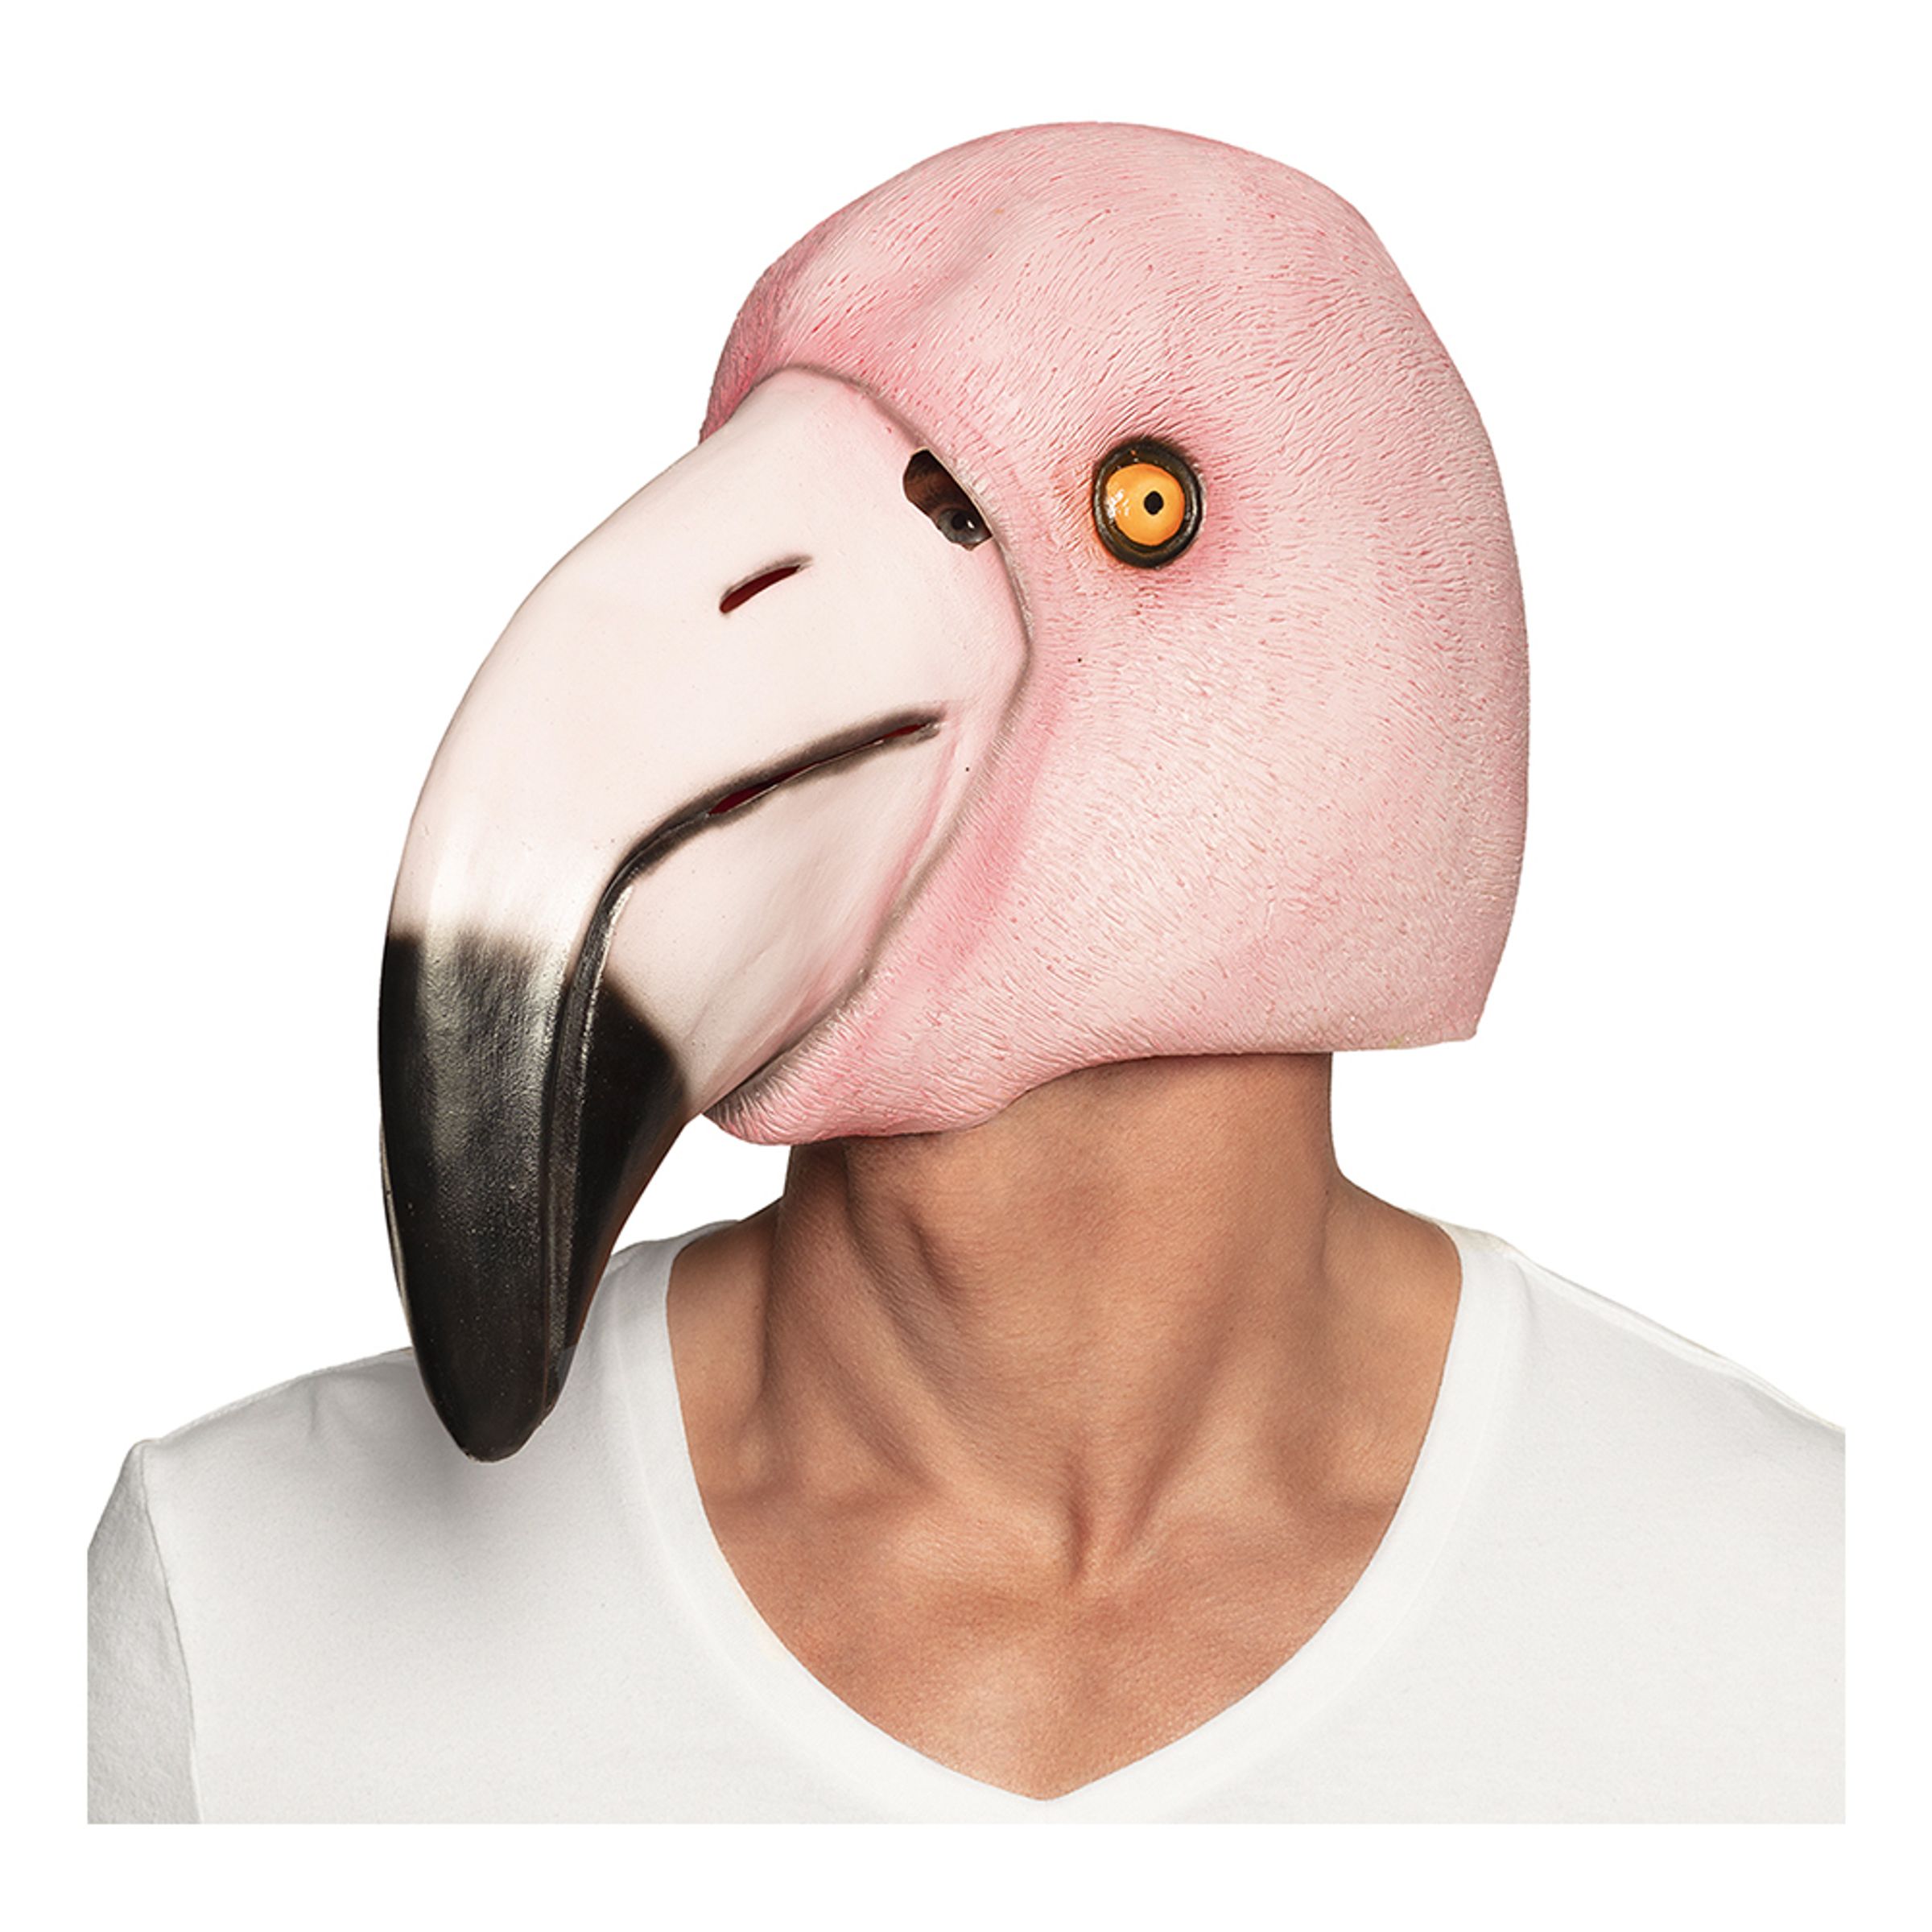 Djurmasker - Flamingo Mask - One size